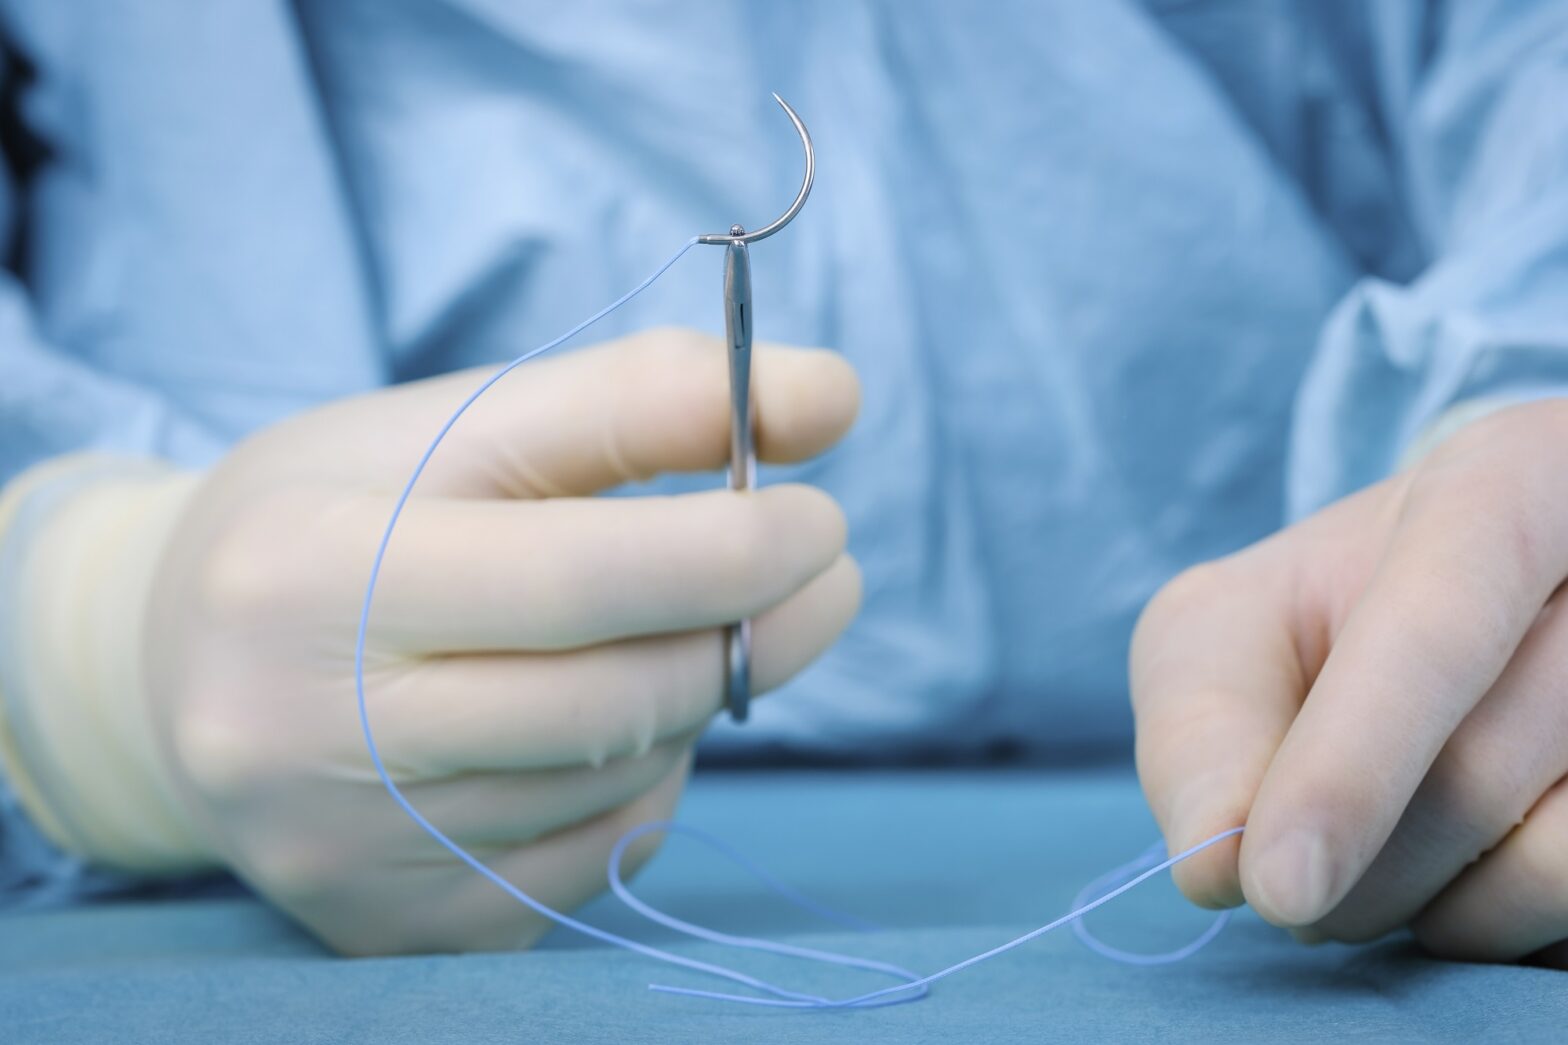 Global Suture Needles Industry